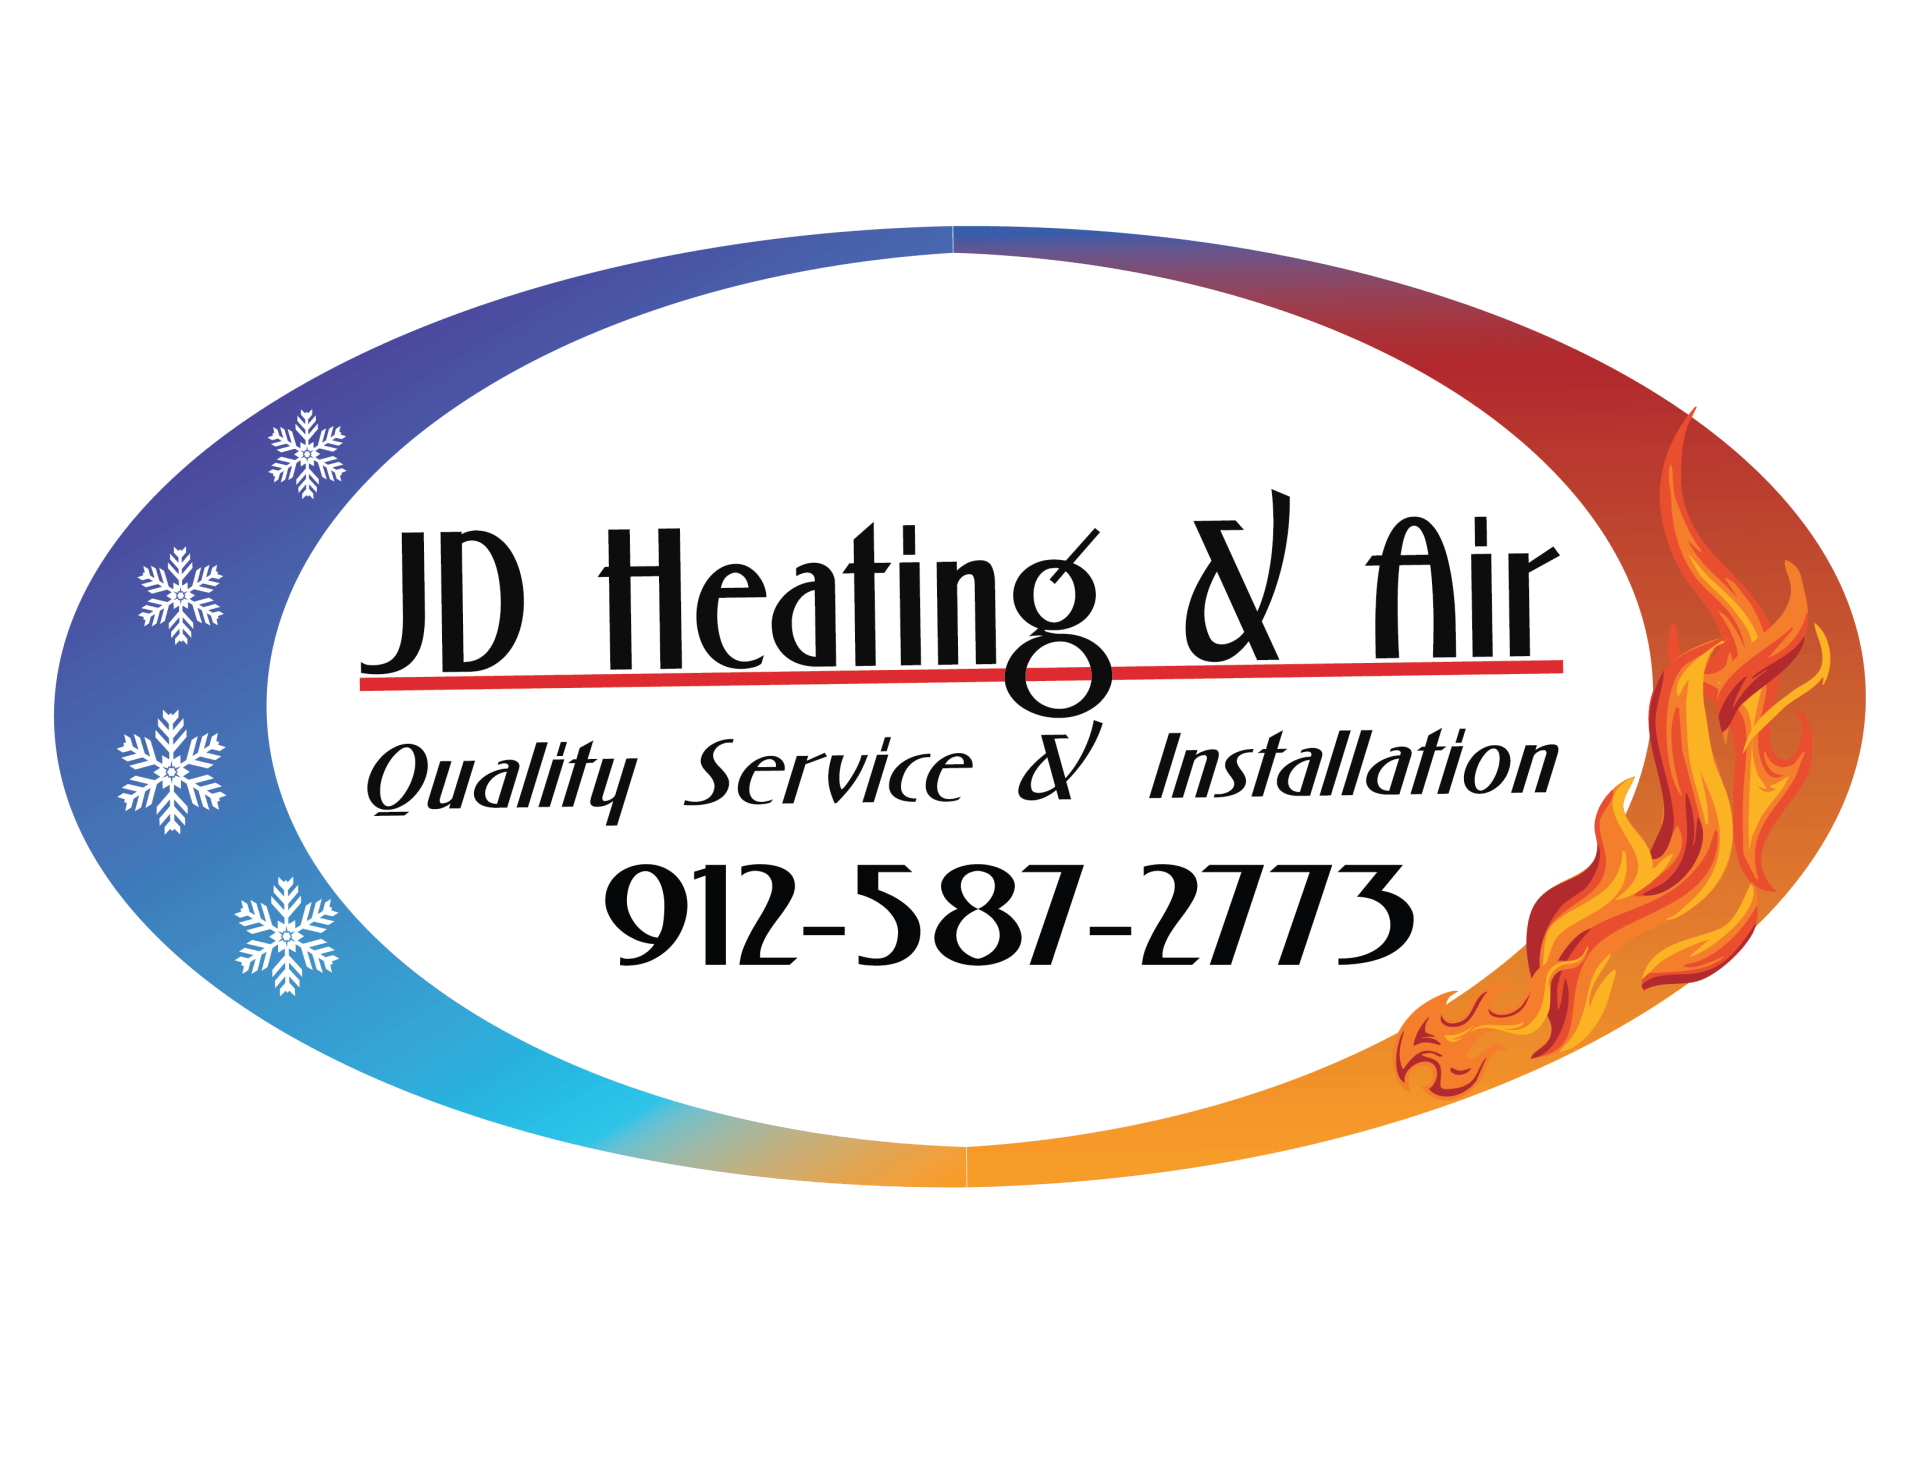 JD Heating & Air logo